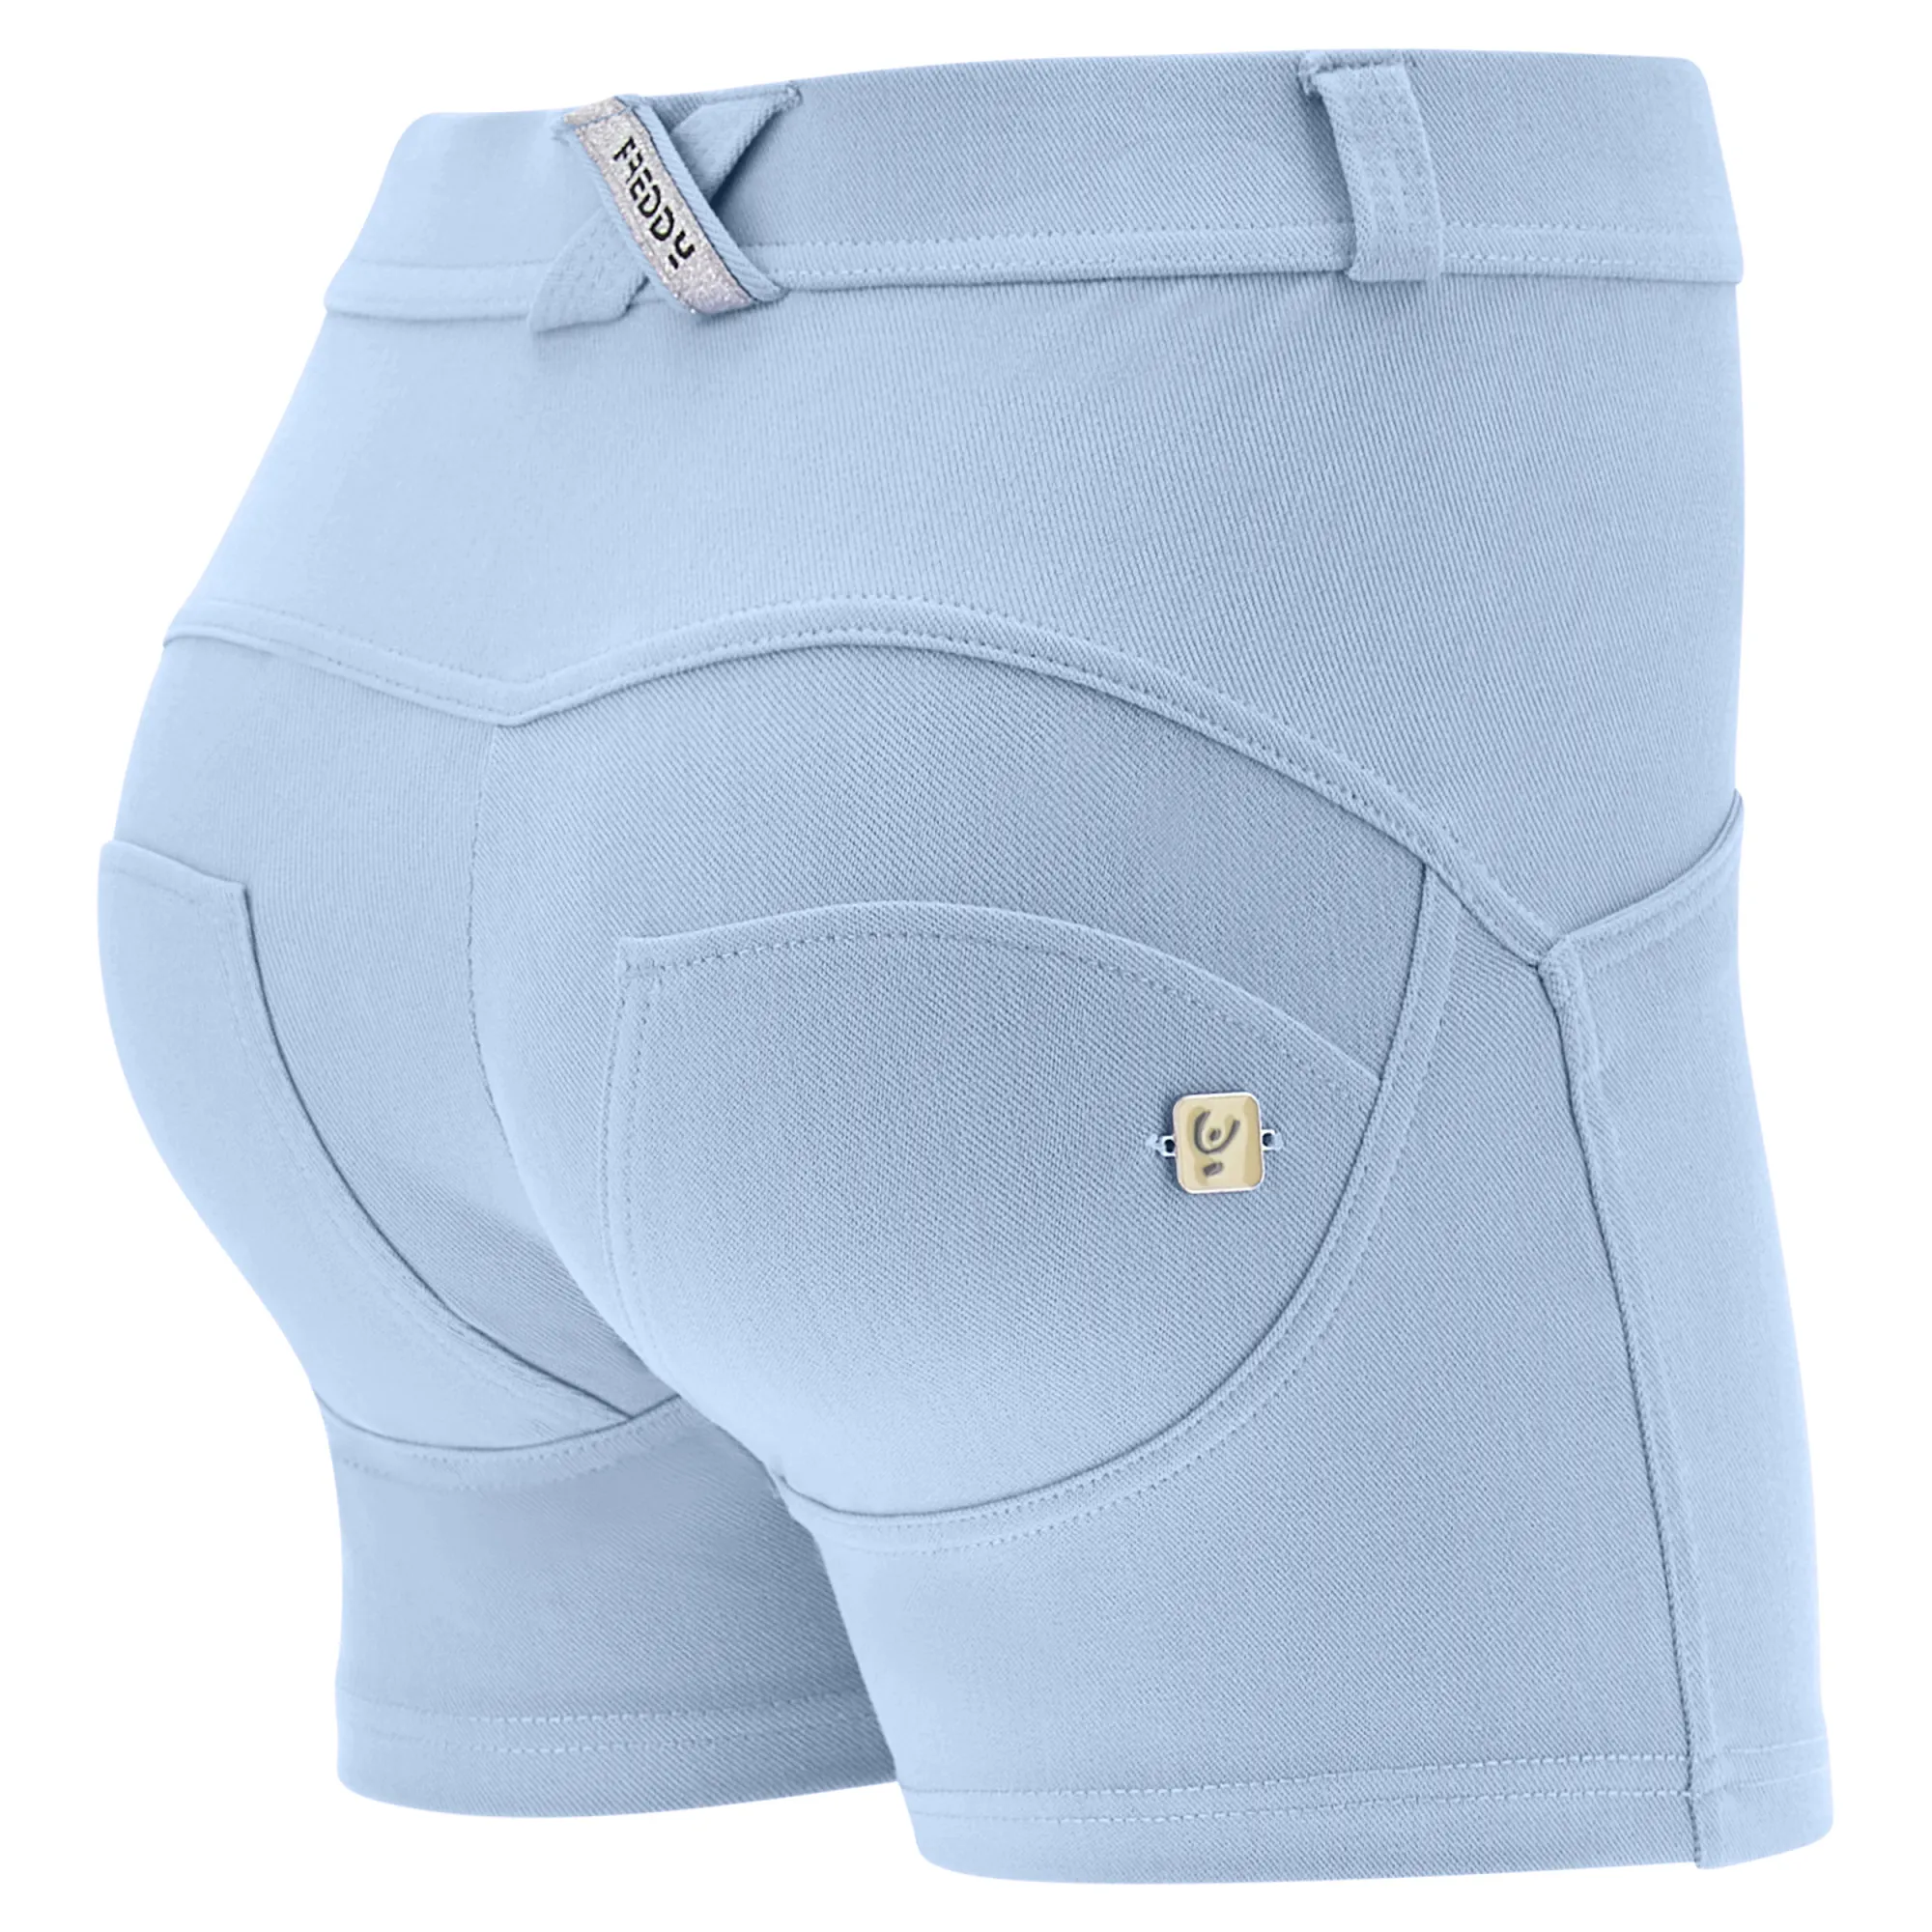 Freddy WR.UP® Drill Damen Push-Up Hose Shorts - Regular Waist - Grau-Blau - C54